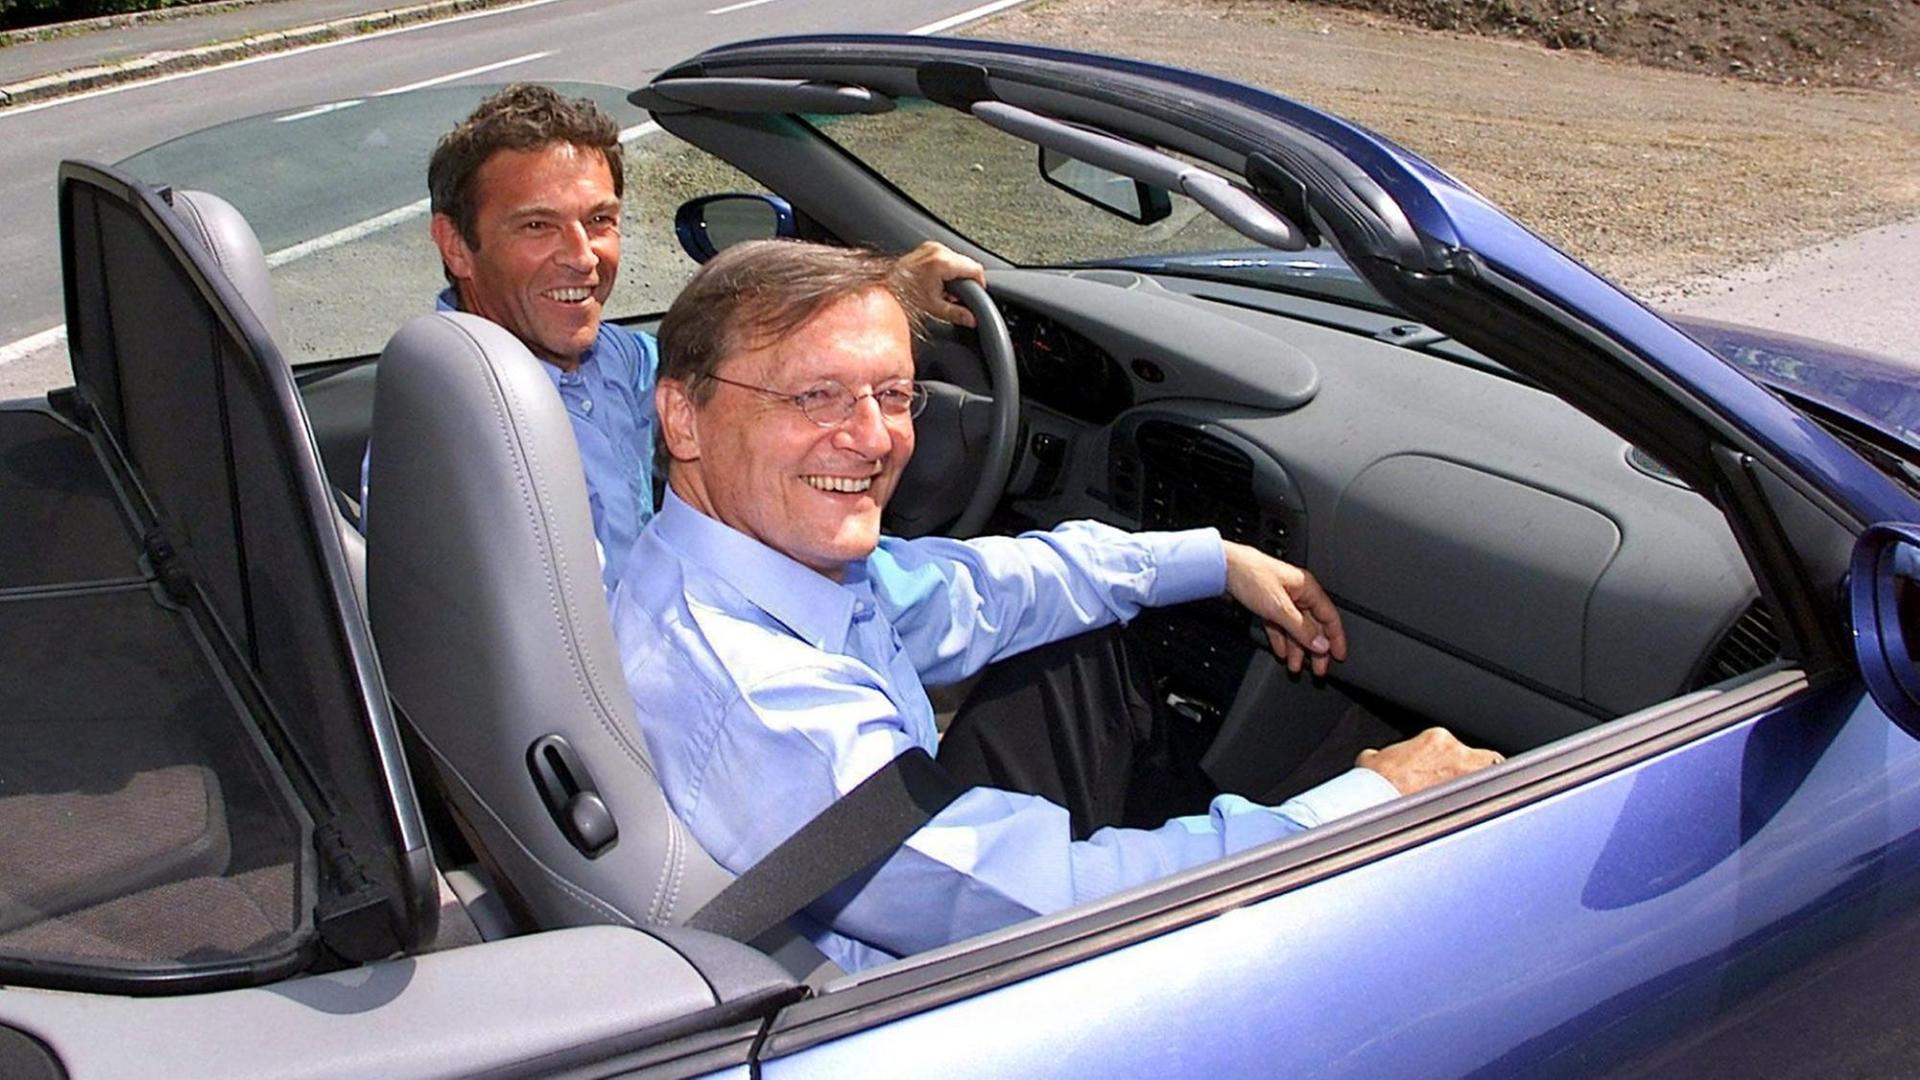 Der österreichische Bundeskanzler Wolfgang Schüssel (rechts im Bild) im Juni 2000 als Beifahrer im offenem Porsche von Jörg Haider, österreichischer Rechtspopulist und Landeshauptmann von Kärnten